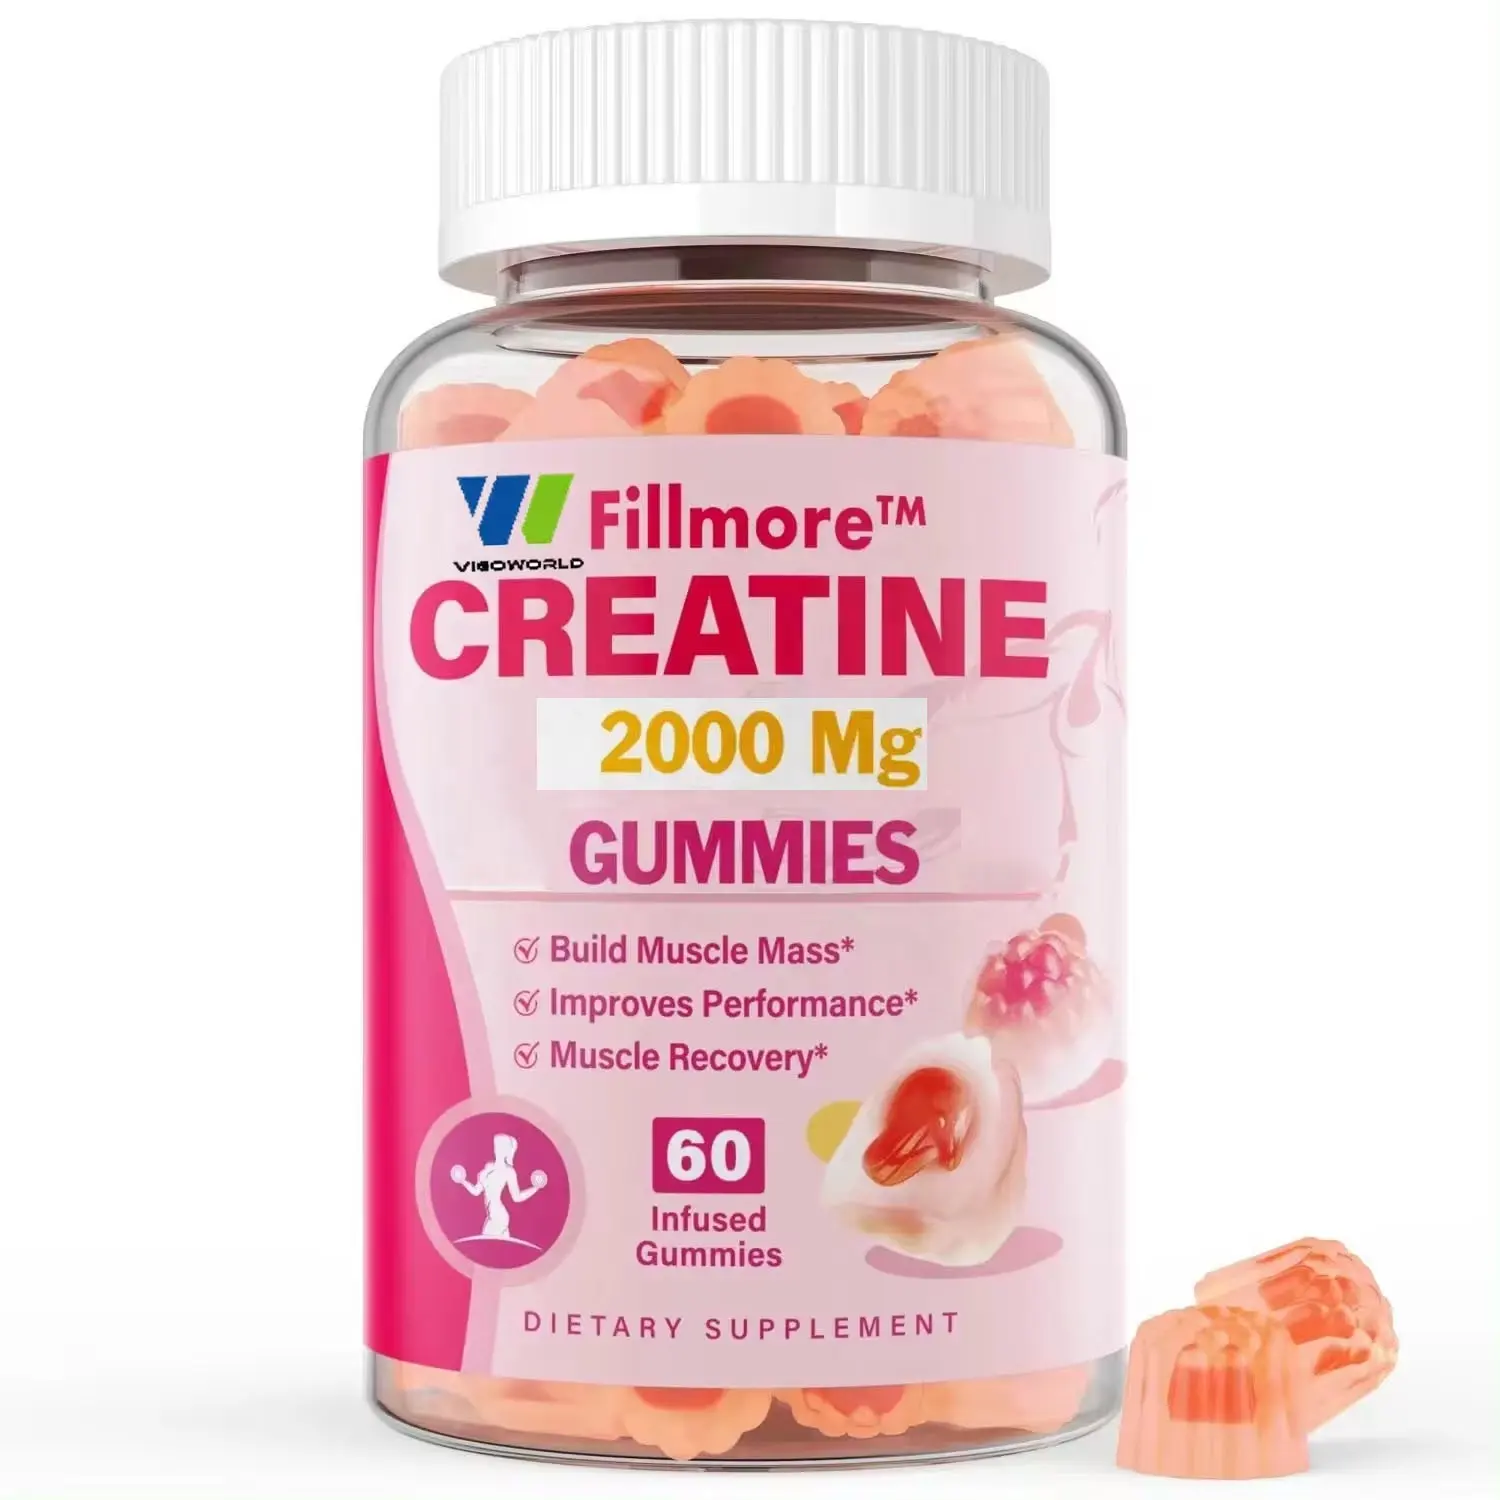 Özel etiket merkezi dolu kreatin monohidrat Gummies Vitamin-erkekler ve kadınlar için Tablet formunda zenginleştirilmiş şeker